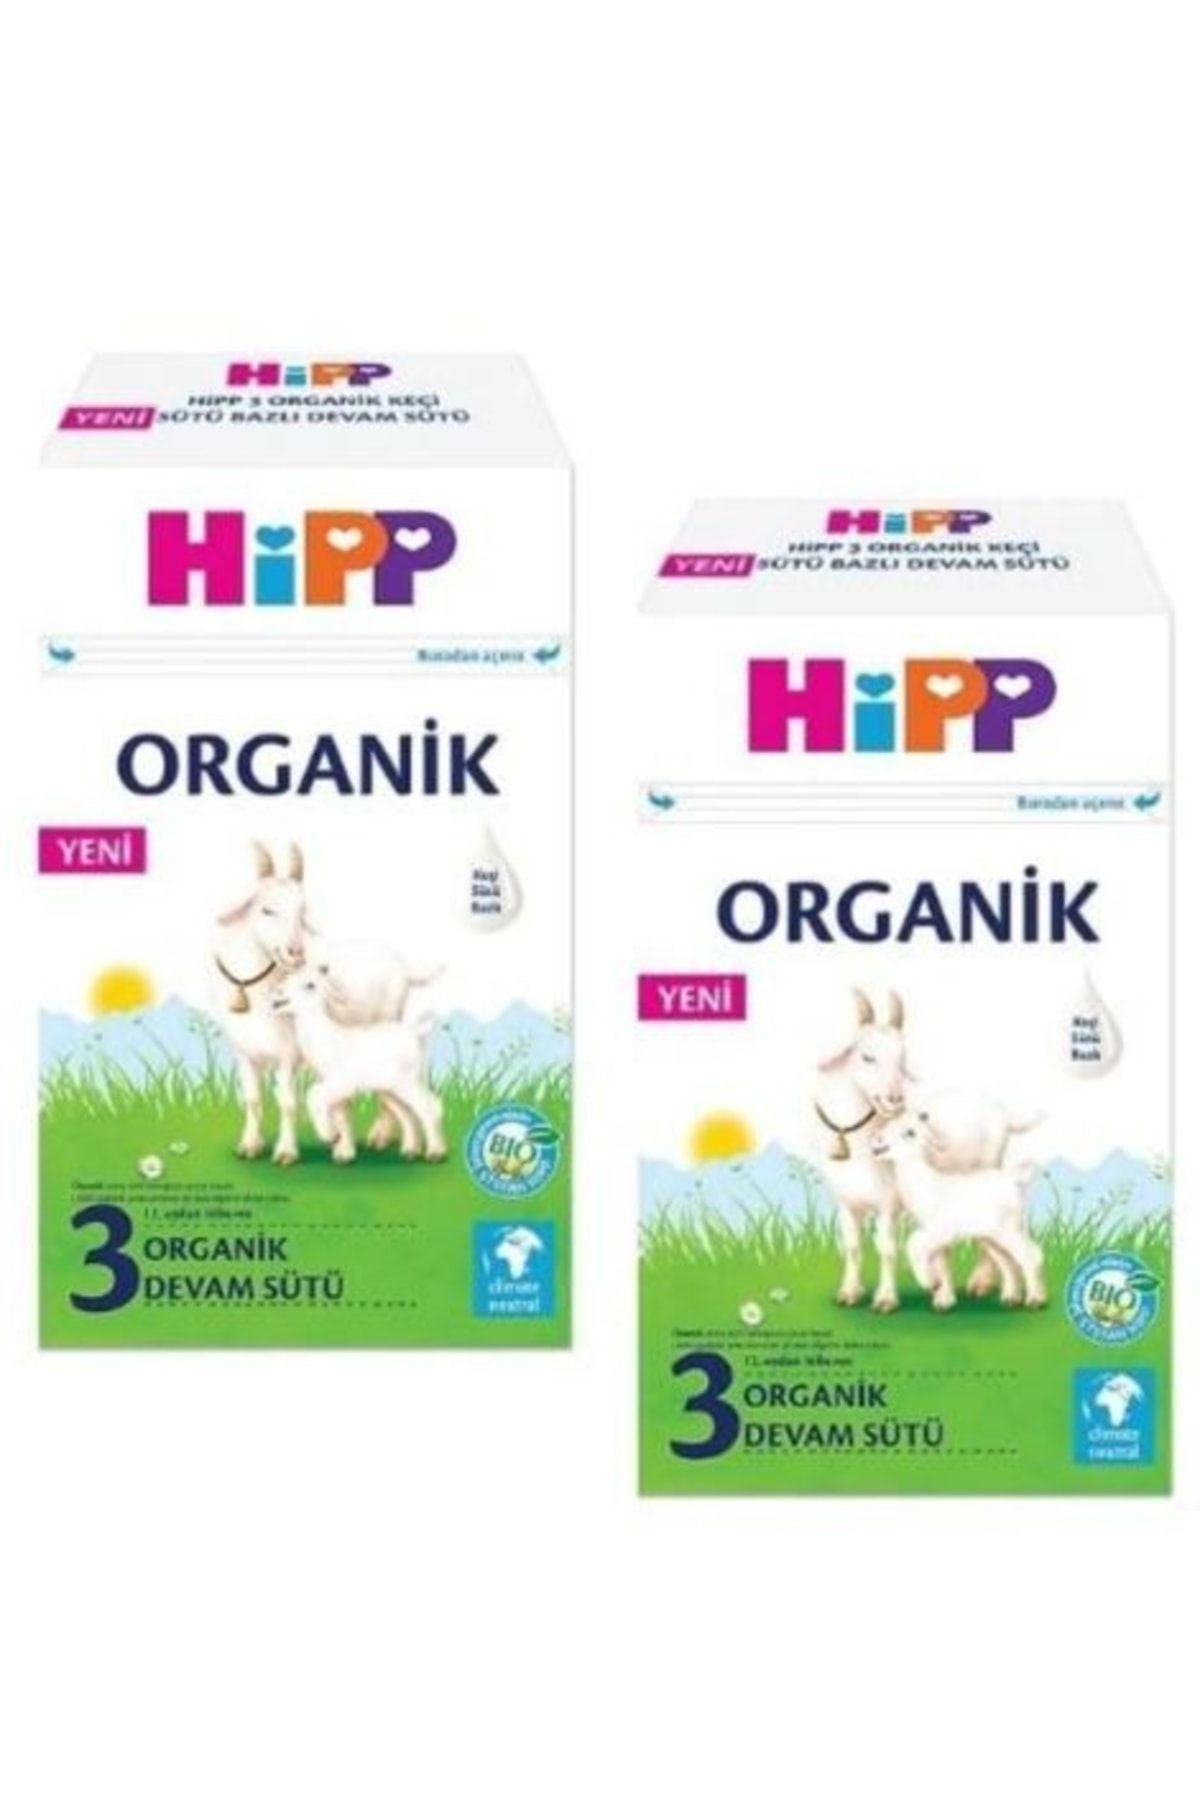 Hipp 3 Organik Keçi Sütü Bazlı Devam Sütü 400 Gr X 2 Adet